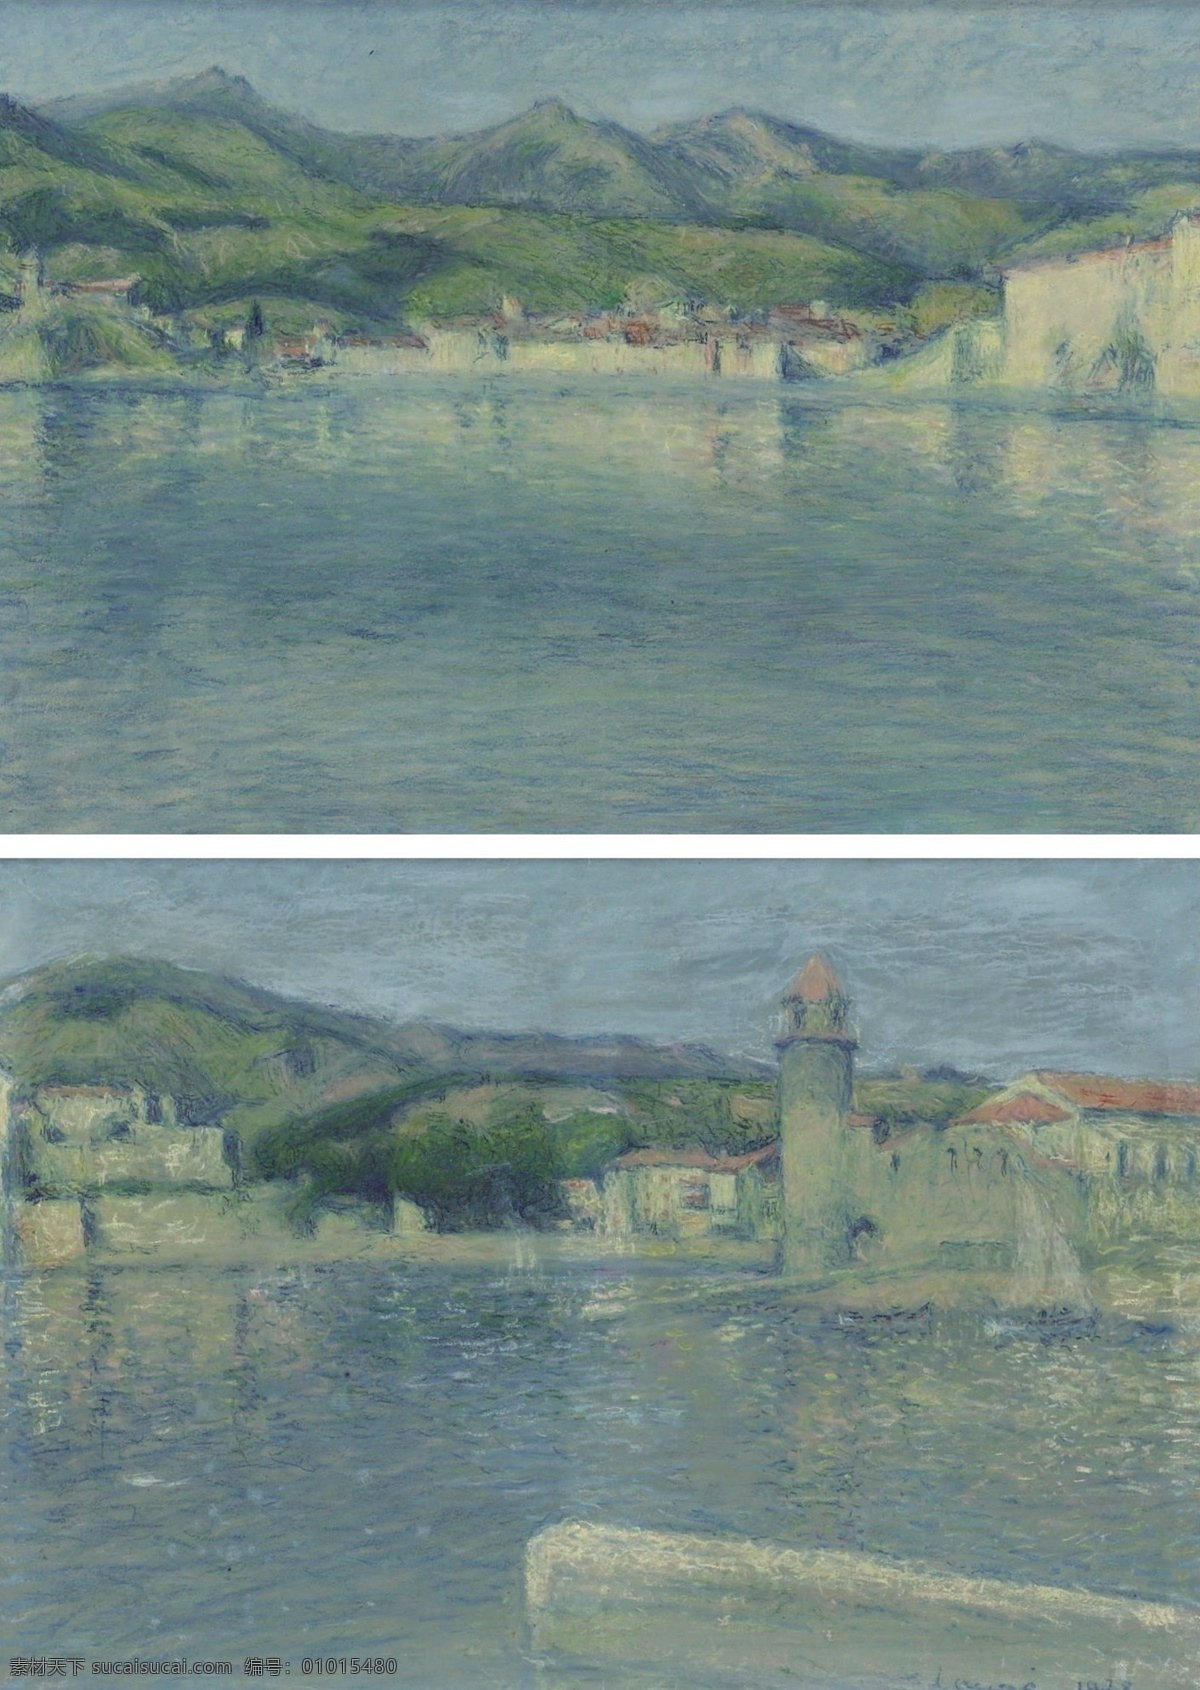 1928 法国 画家 希尔 diptych saintvincent point from collioure port the of view lauge achille